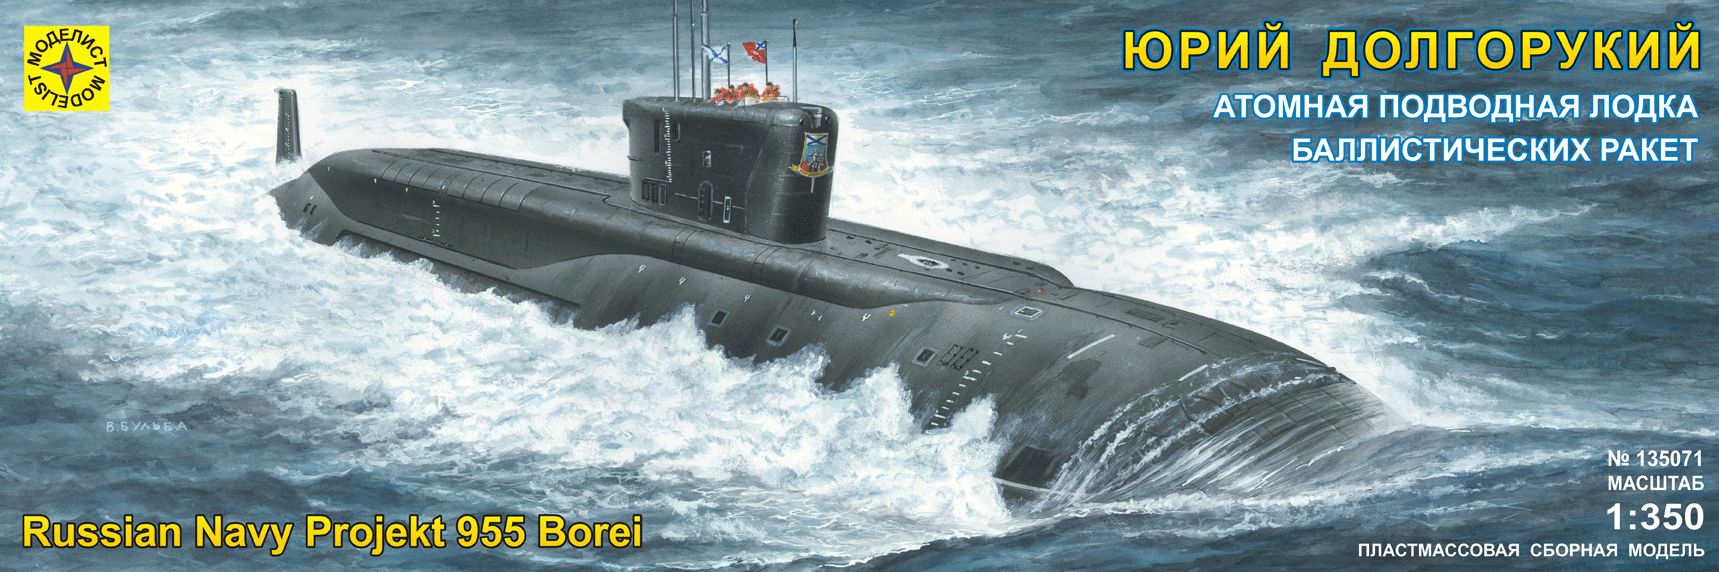 135071  флот  Атомная подводная лодка баллистических ракет "Юрий Долгорукий" (1:350)